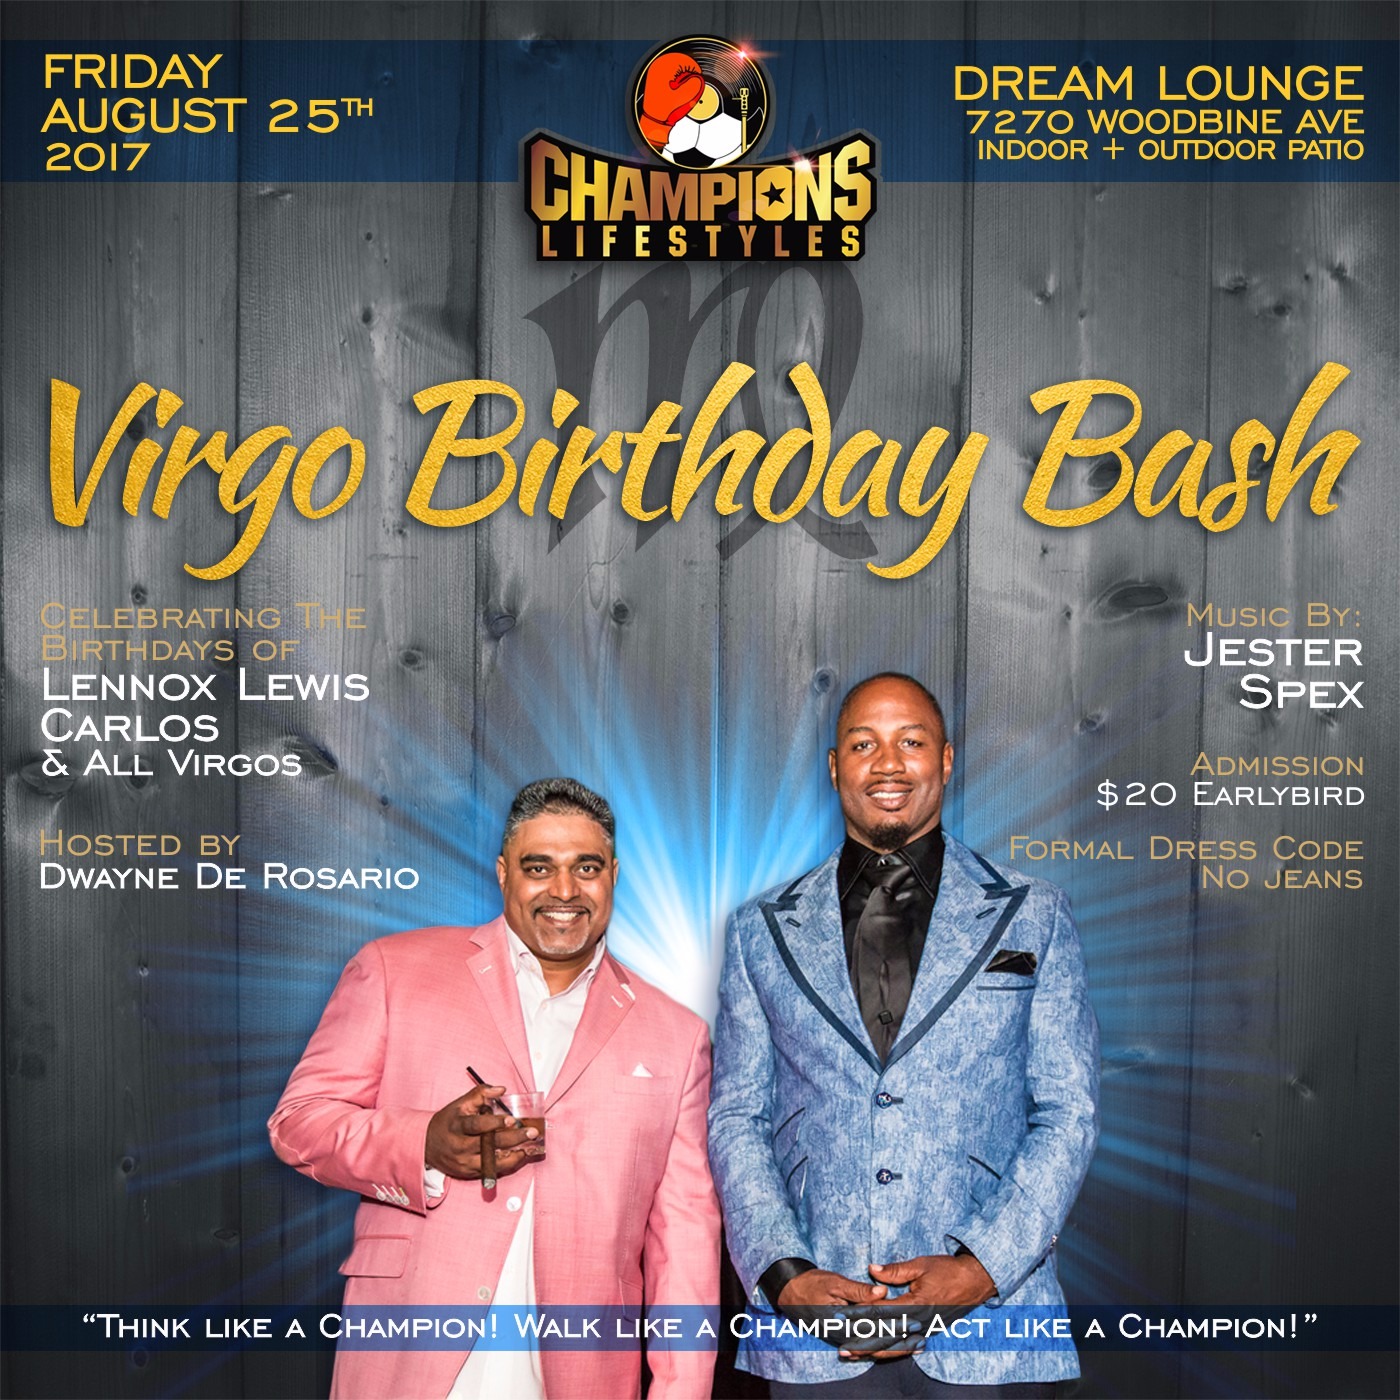 Virgo Birthday Bash | Hosted By: Dwayne De Rosario